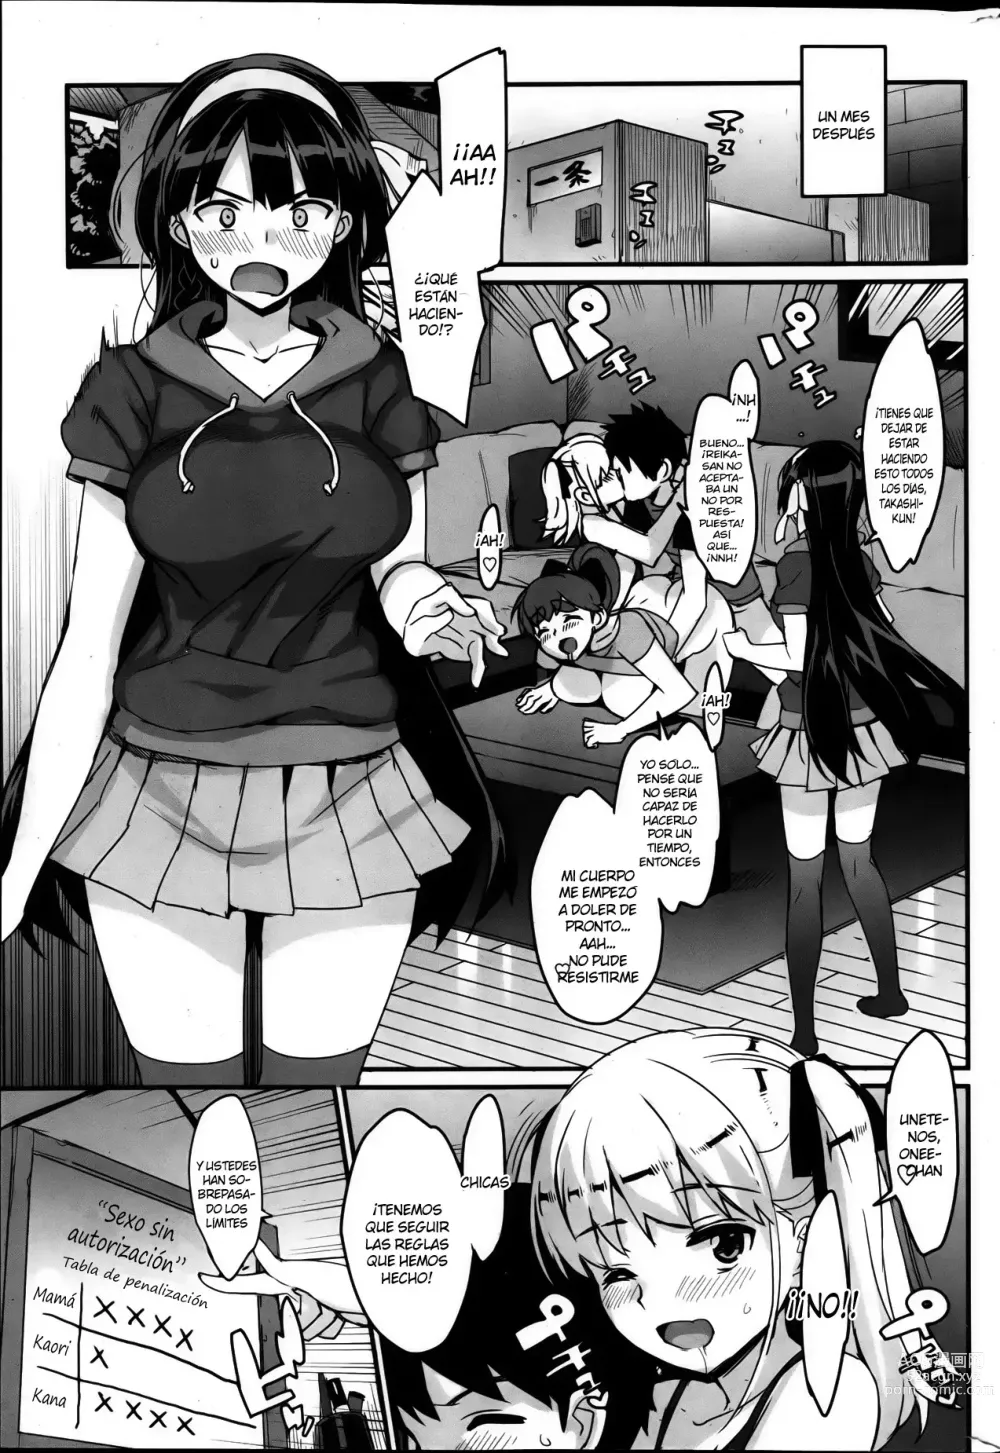 Page 145 of manga Katekano!